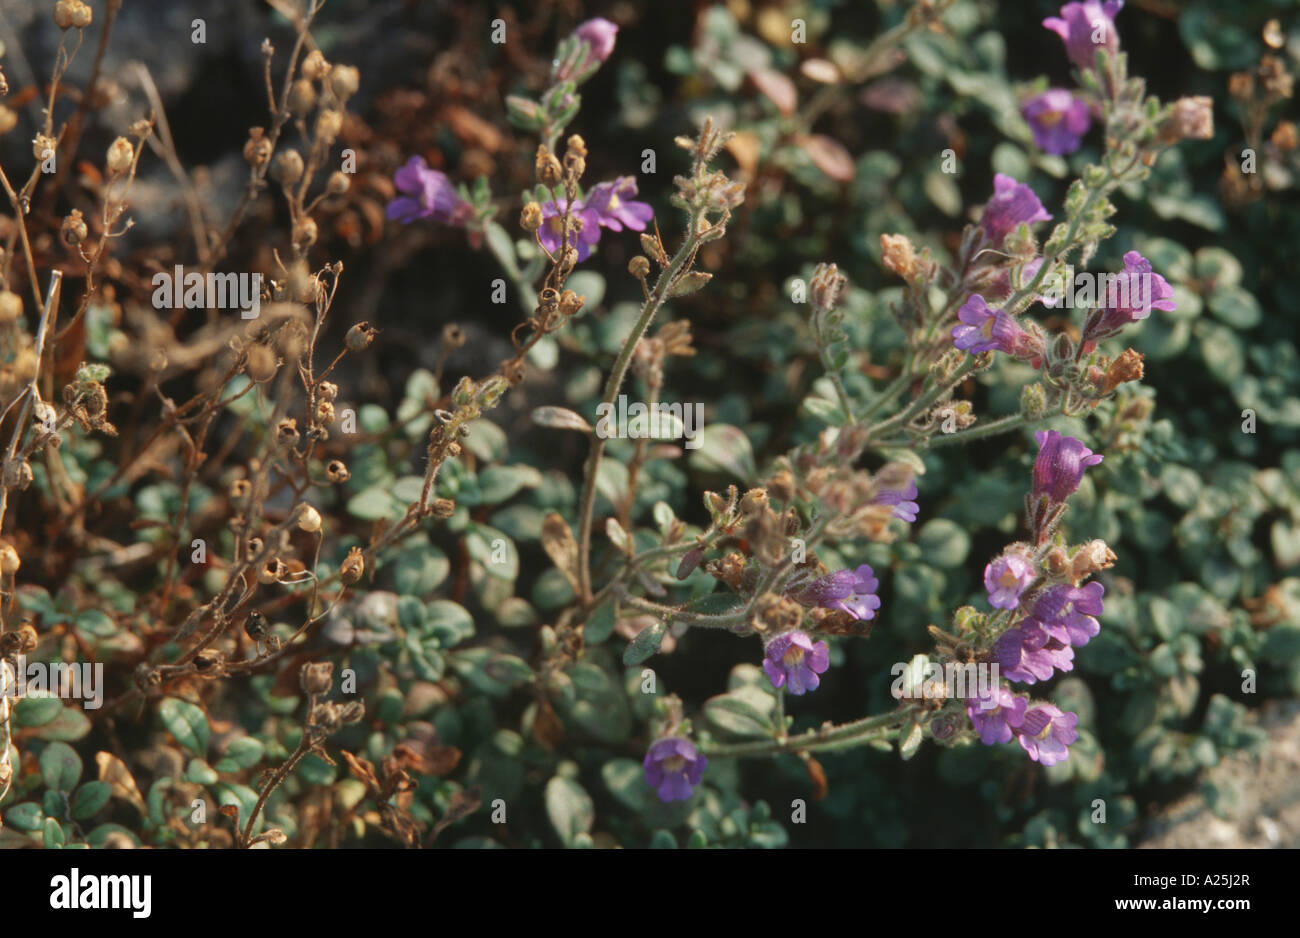 snapdragon (Chaenorrhinum origanifolium), blooming plant Stock Photo